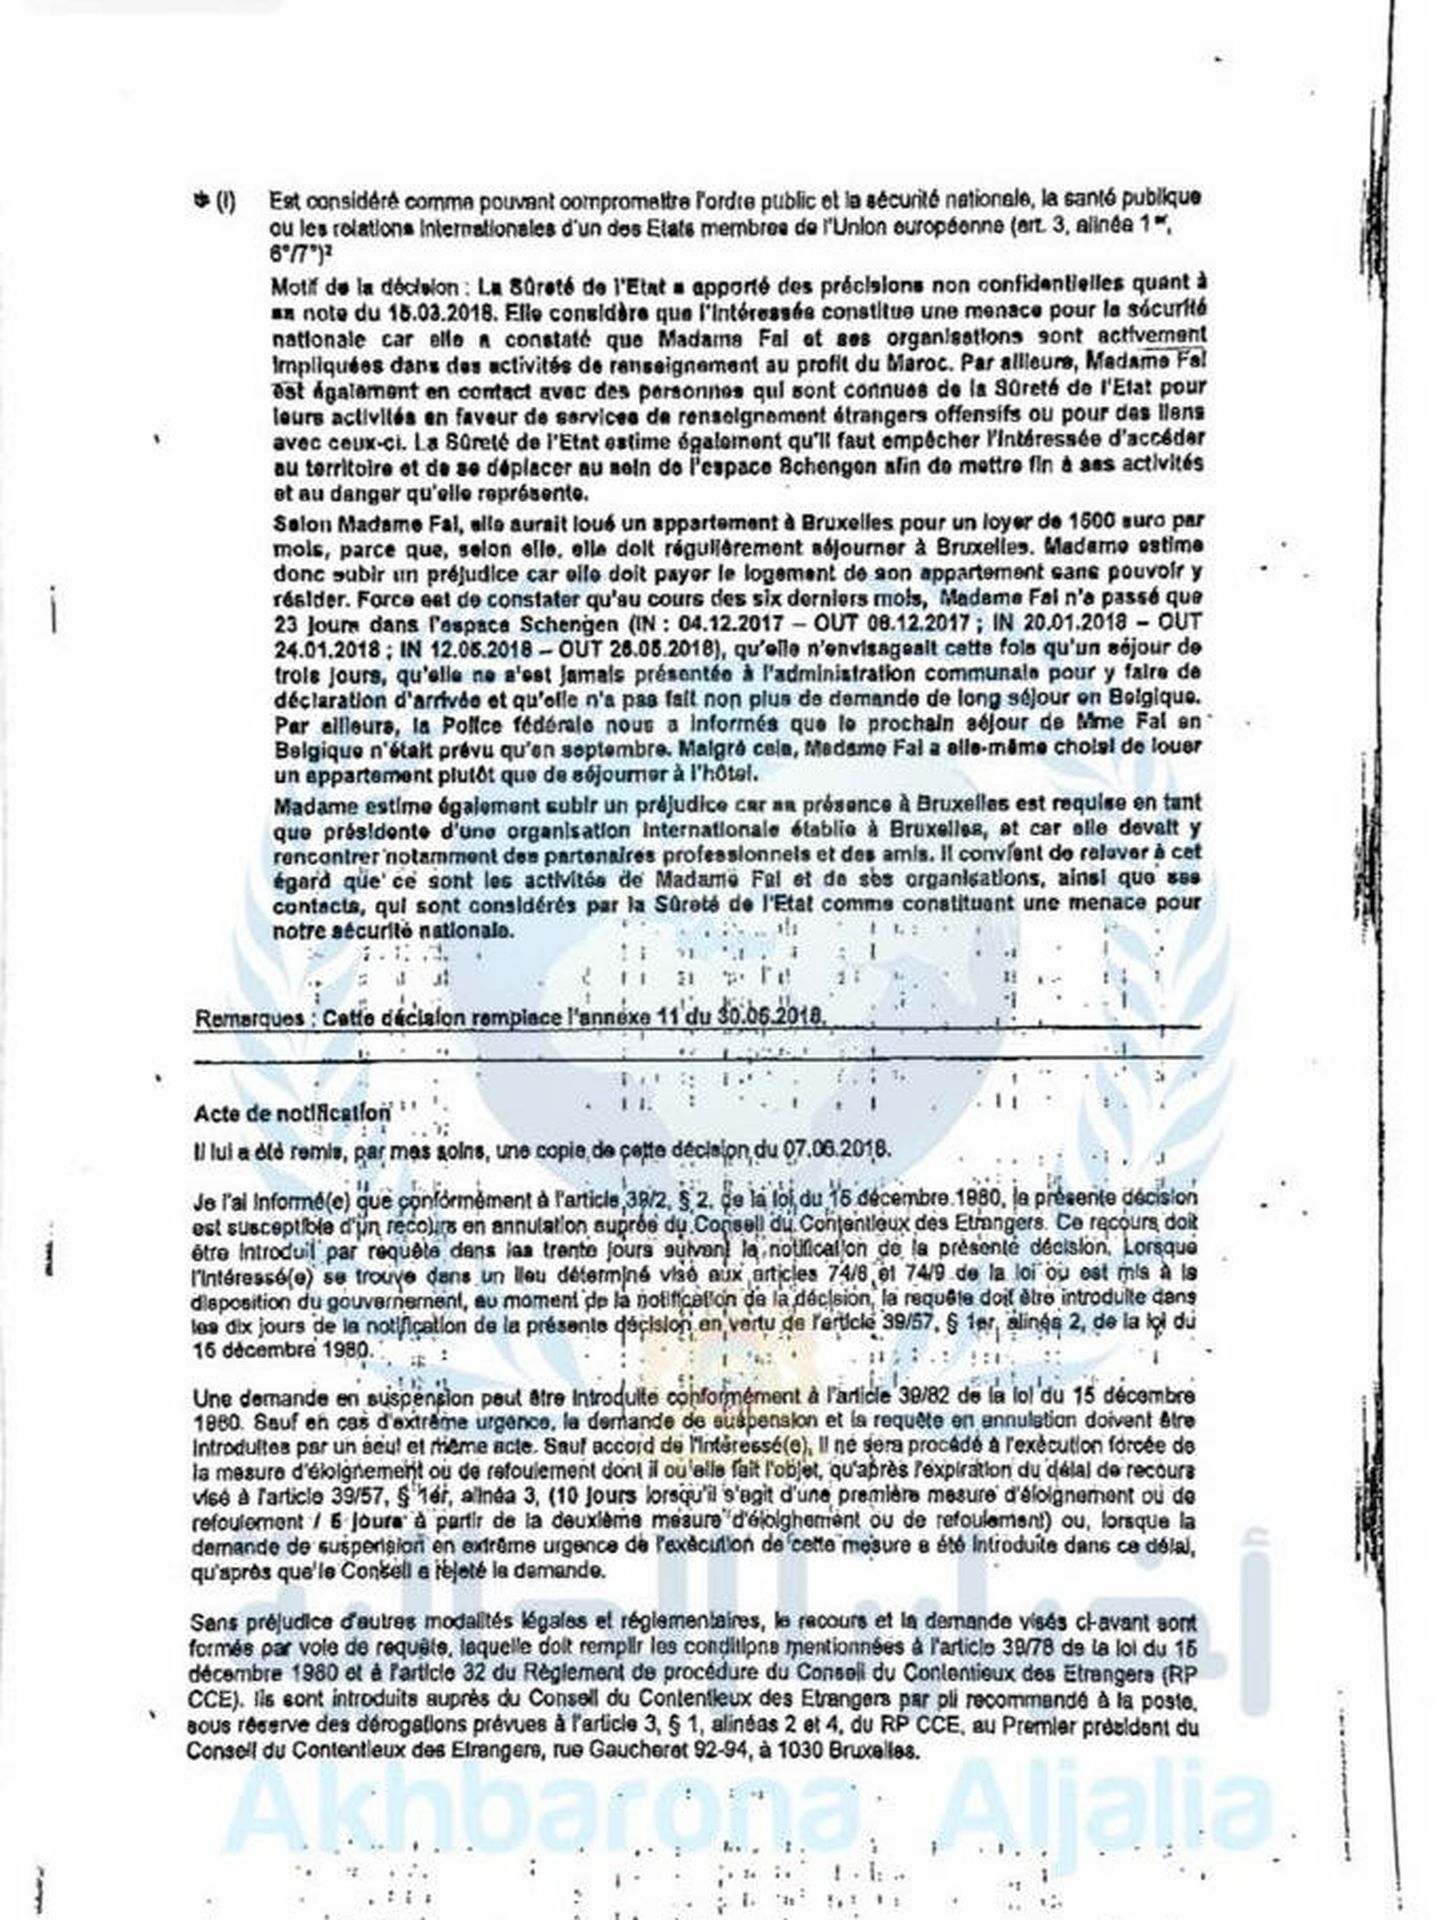 Resolución de la Oficina de Extranjería belga que recoge la nota de la Seguridad del Estado sobre Kaoutar Fal.